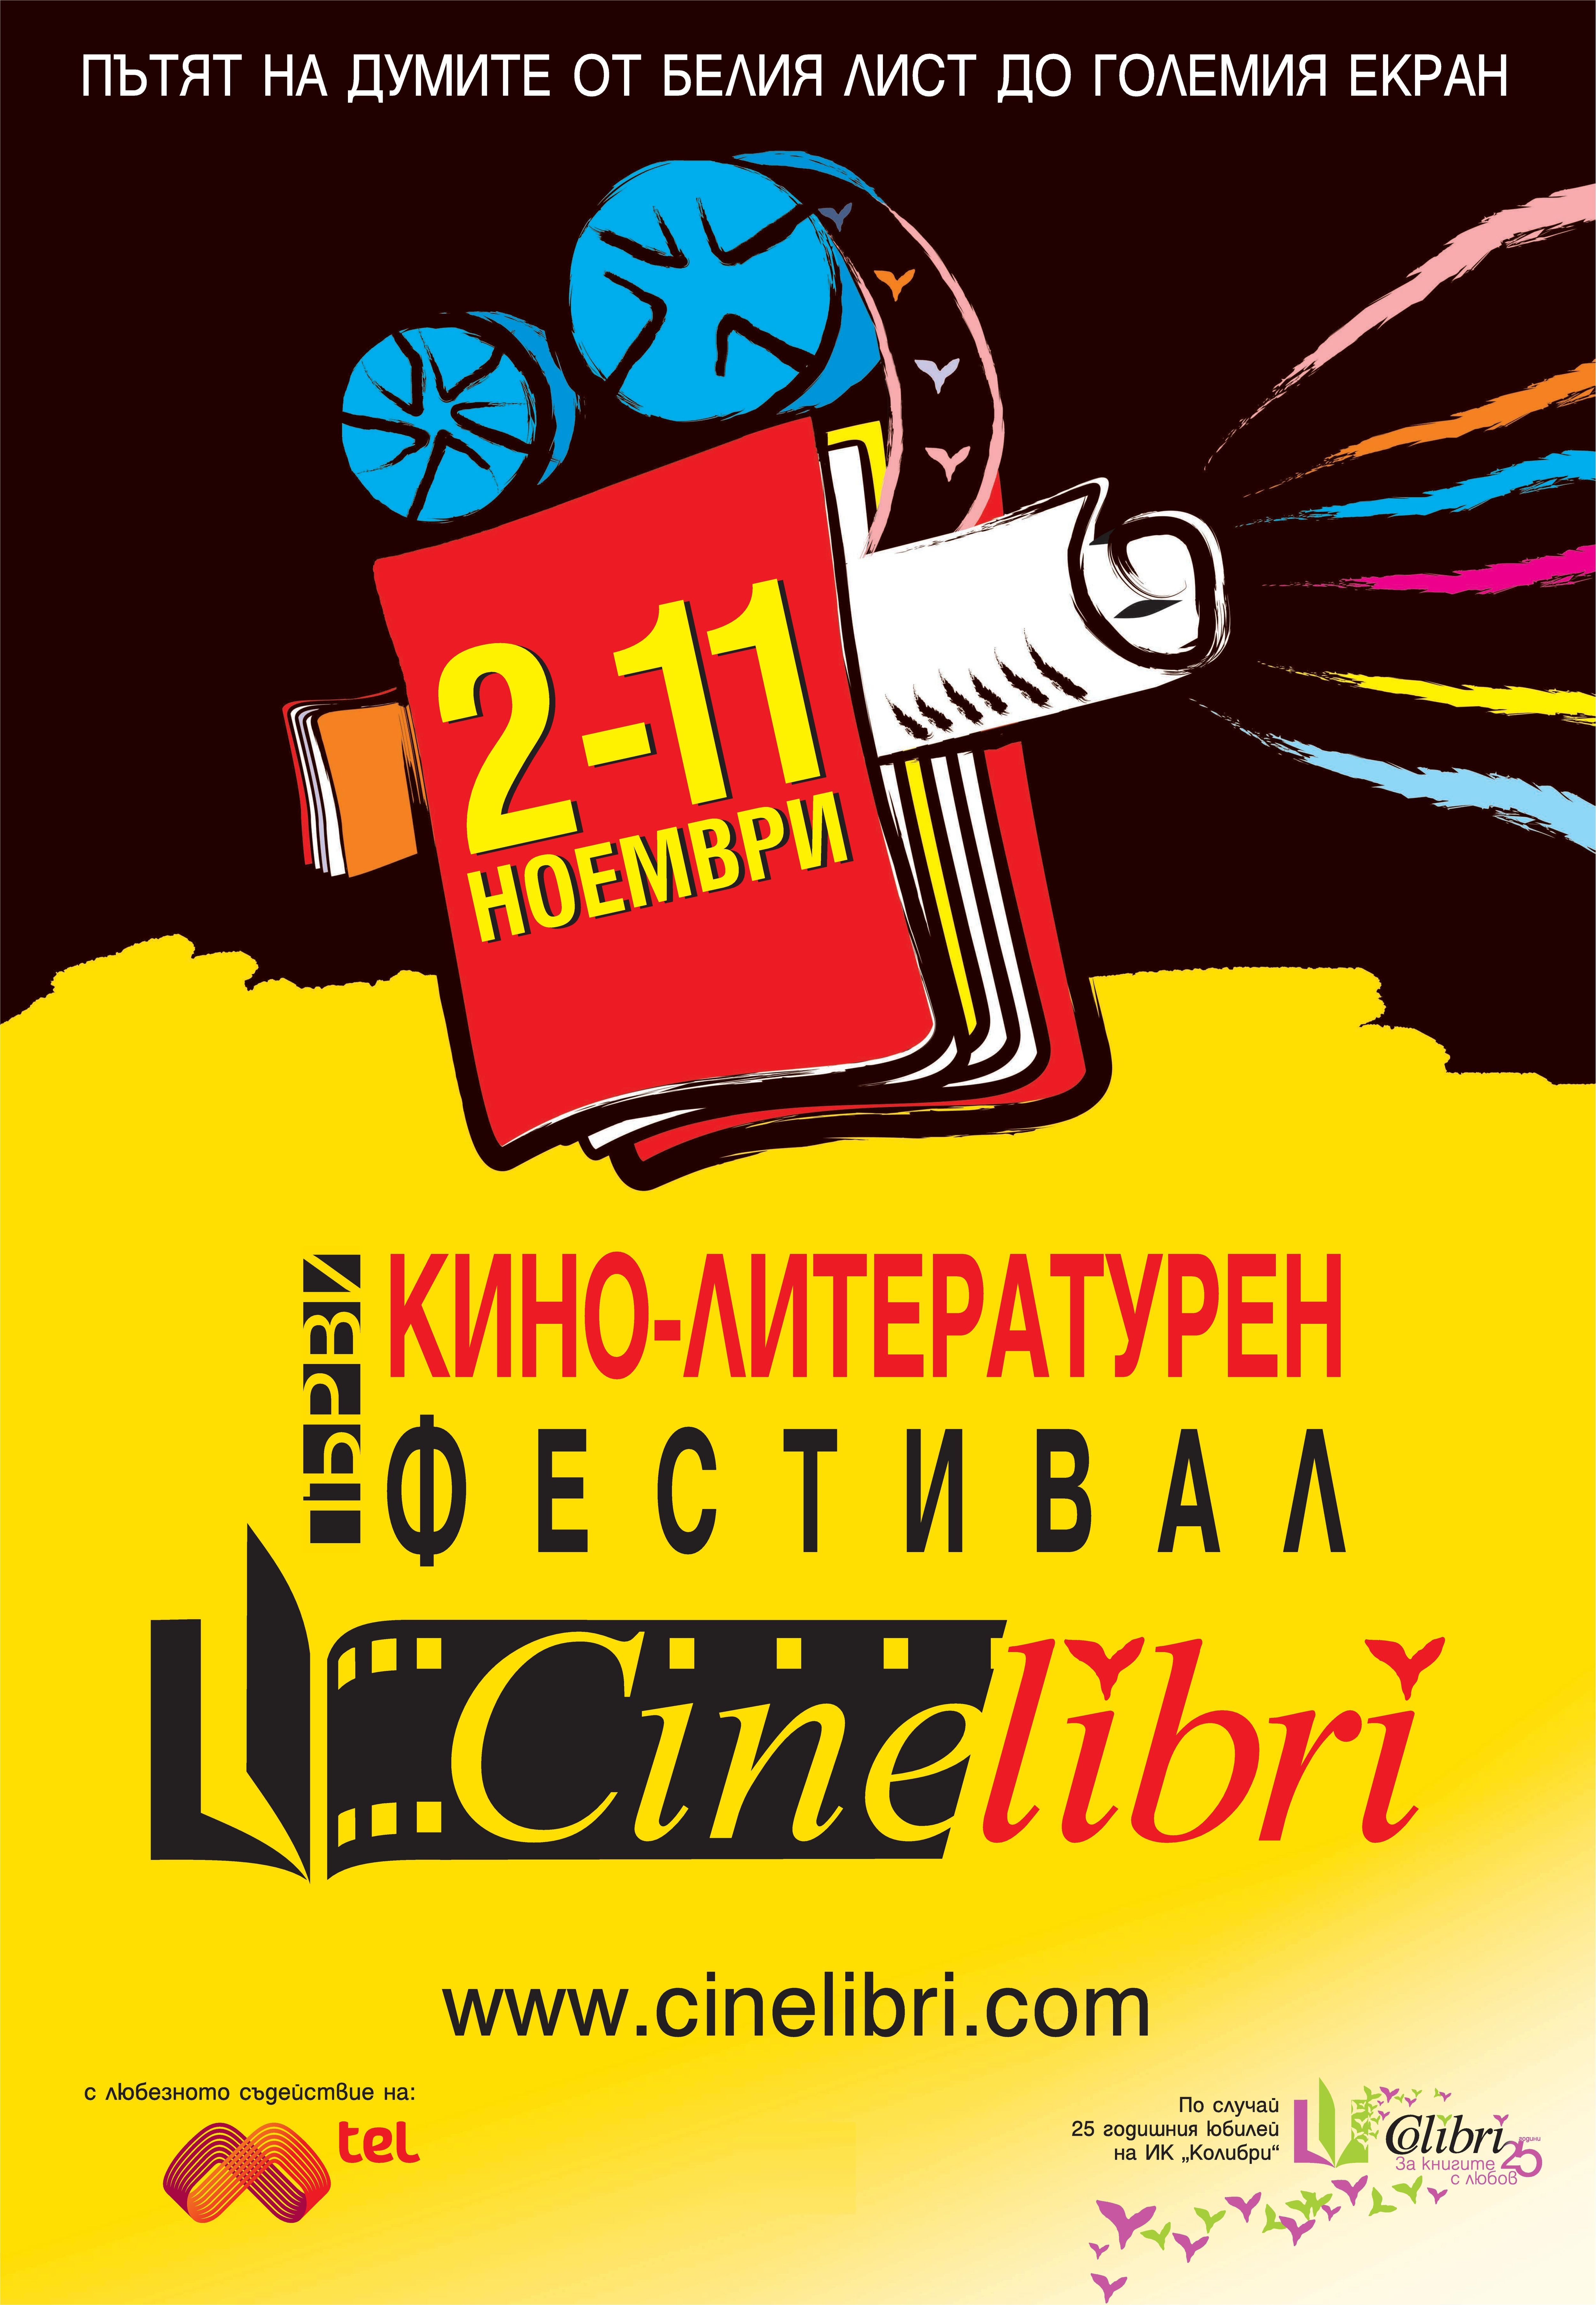 CineLibri: Първи кино-литературен фестивал